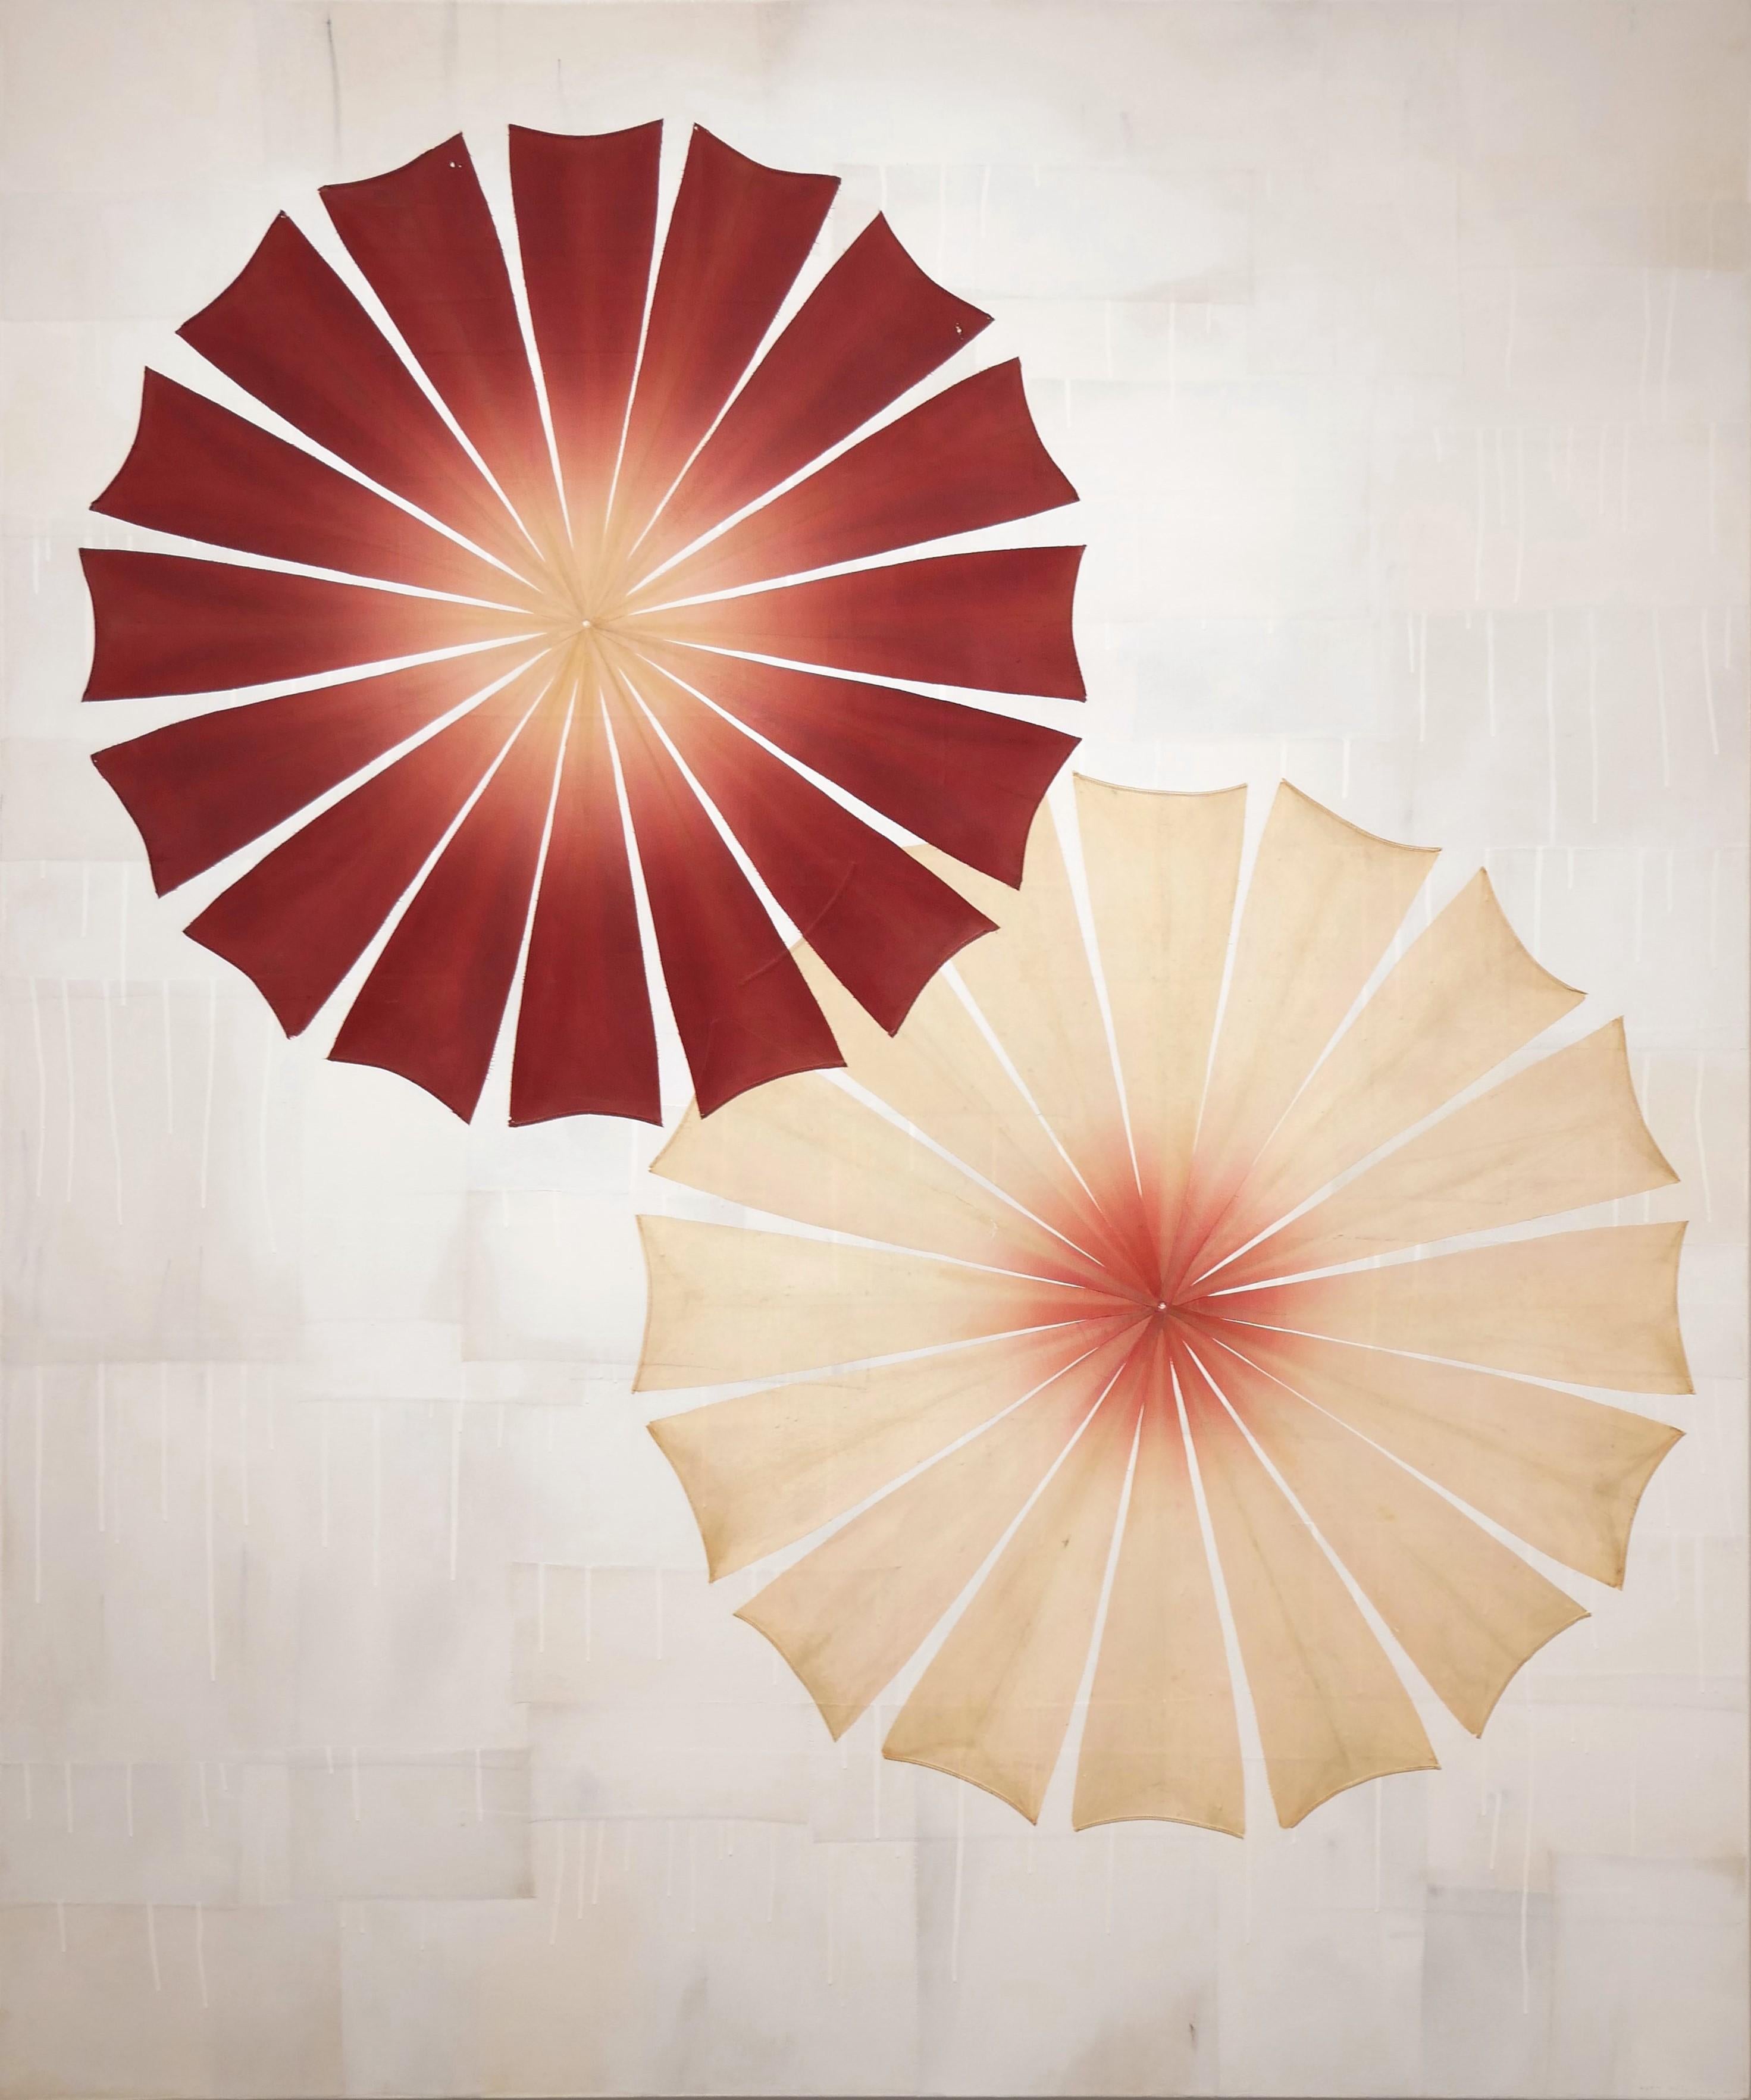 ""parasol 2" Peinture d'objets d'objets trouvés abstraits d'inspiration folklorique contemporaine - Mixed Media Art de Matt Messinger